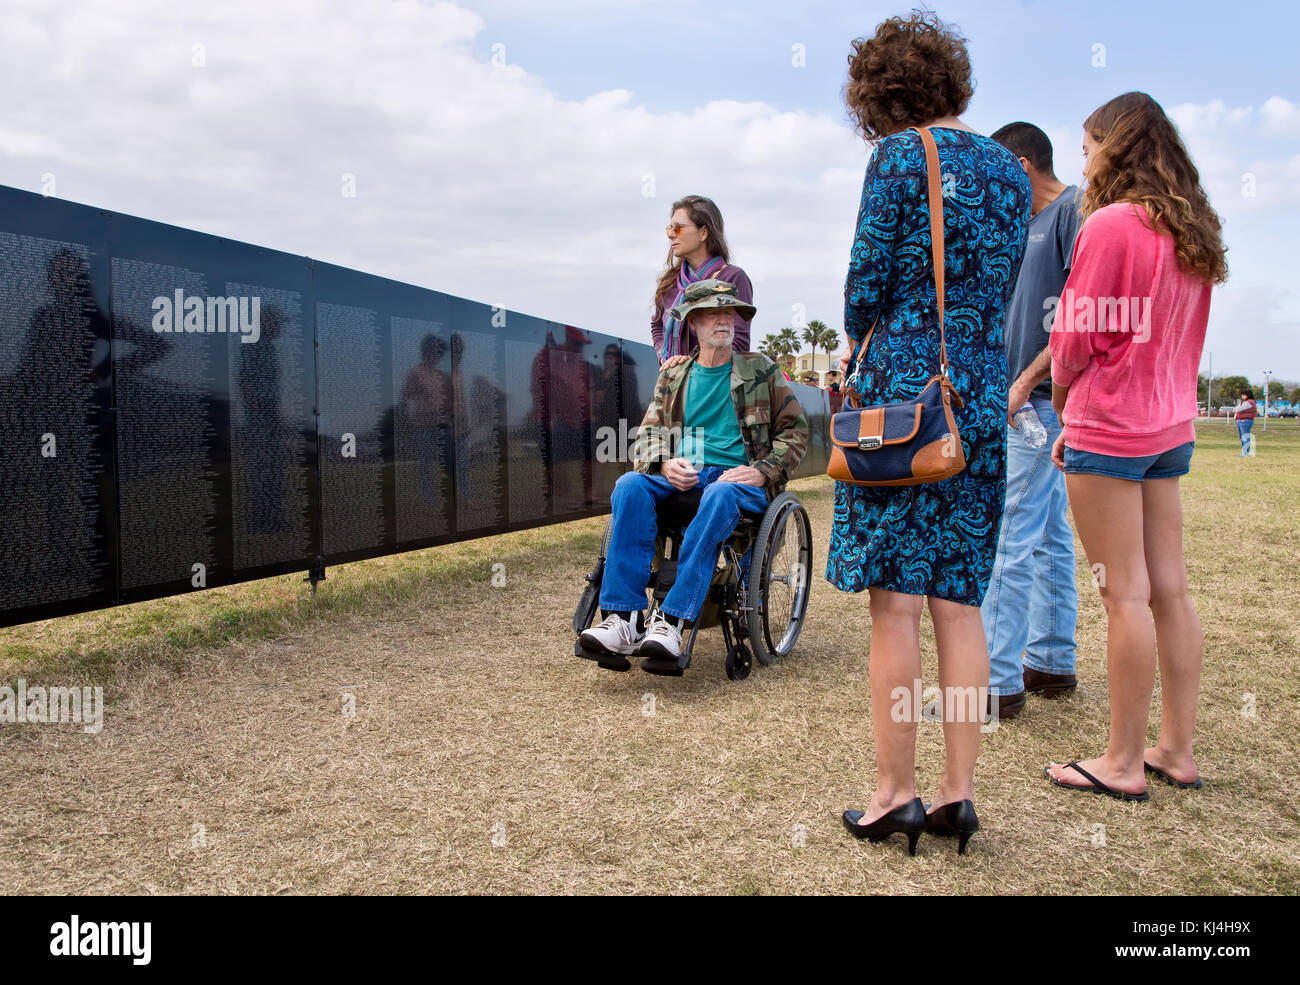 Veterano de la guerra de Vietnam visitando Vietnam Memorial viajar Muro, Rockport, Texas, Estados Unidos. Foto de stock